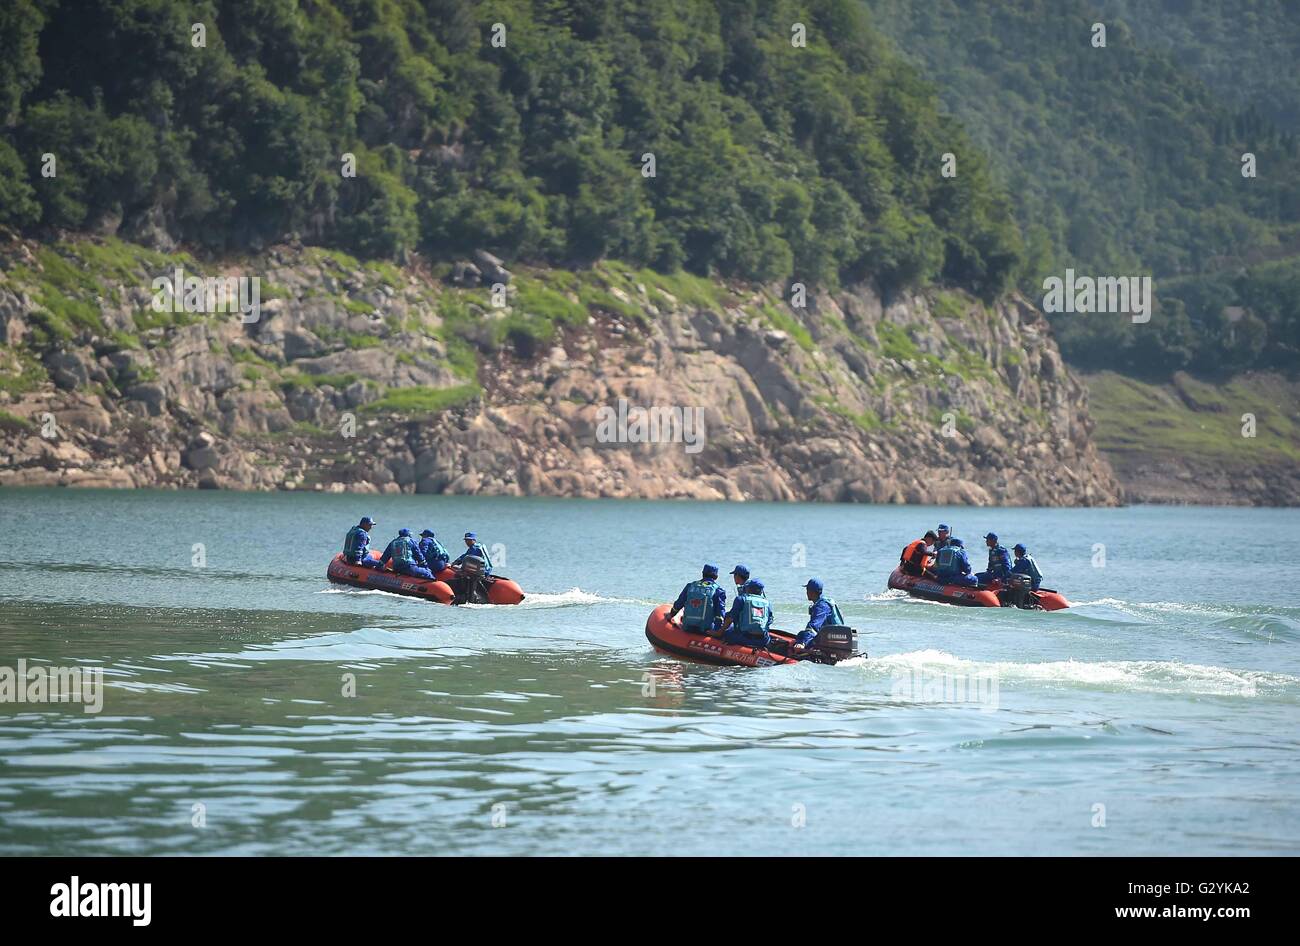 Guangyuan, la province chinoise du Sichuan. 5 juin, 2016. Les sauveteurs recherche des personnes disparues dans la région de Bailong Lac de Guangyuan, dans le sud-ouest de la province chinoise du Sichuan, le 5 juin 2016. Loisirs un bateau transportant 18 personnes, a chaviré sur le lac en raison d'une forte tempête samedi après-midi. Un enfant est mort et 14 personnes sont toujours portées disparues. Credit : Xue Yubin/Xinhua/Alamy Live News Banque D'Images